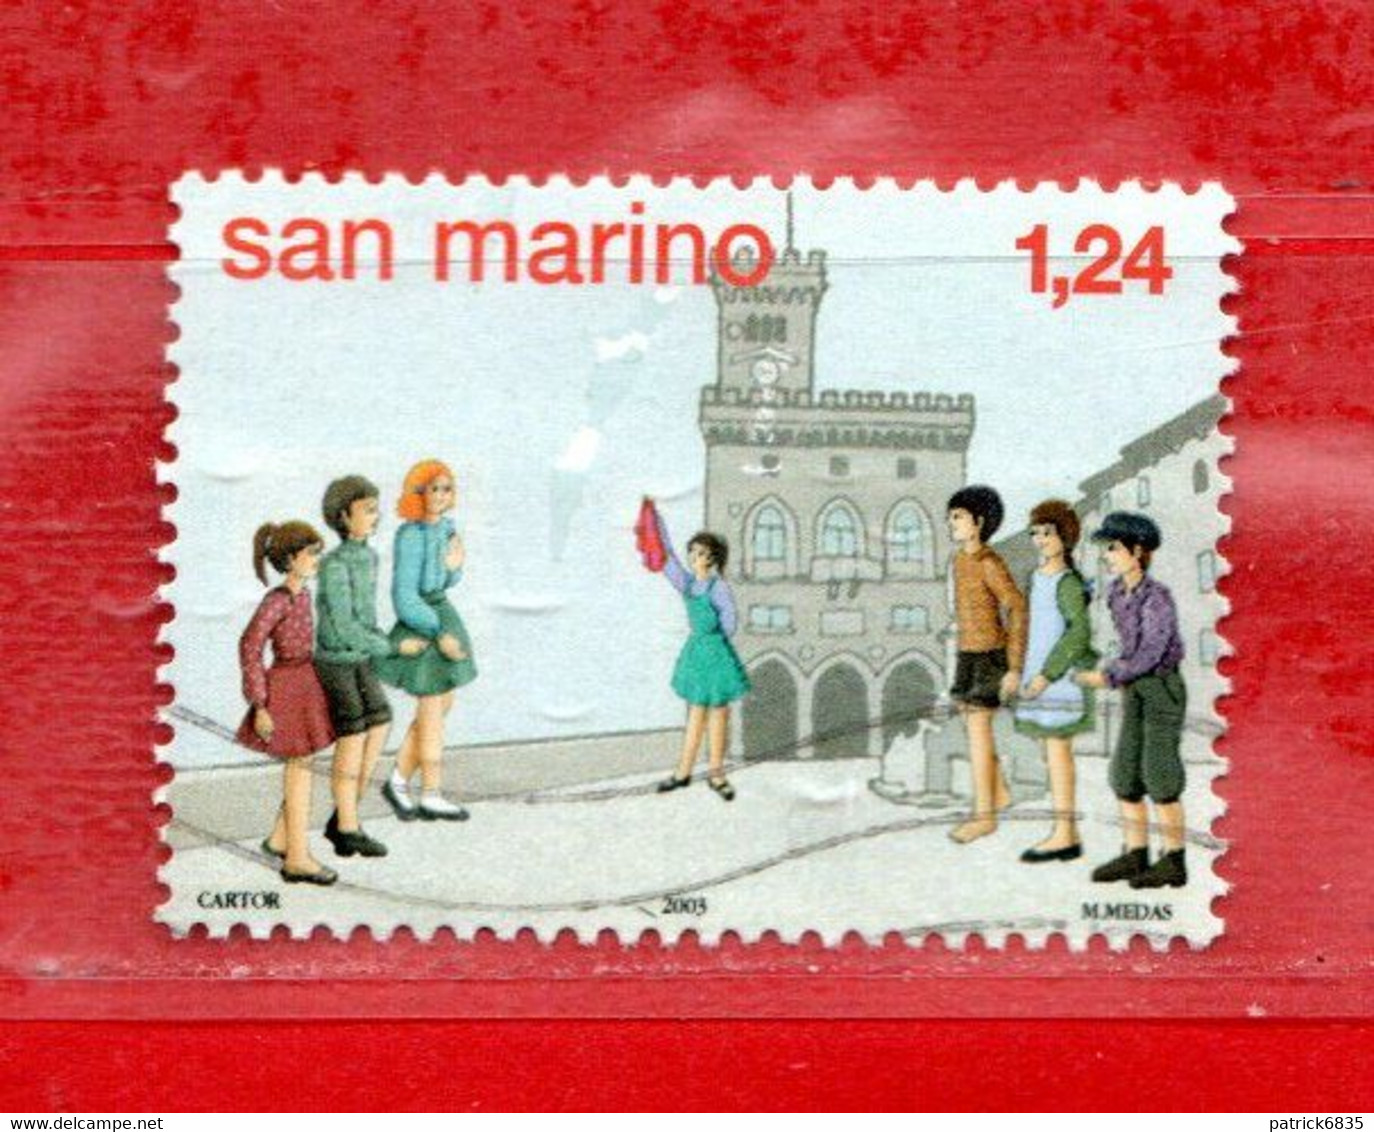 San Marino ° 2003 - AMARCORD - Antichi Giochi Giovanili. Unif. 1952. Usato - Used Stamps